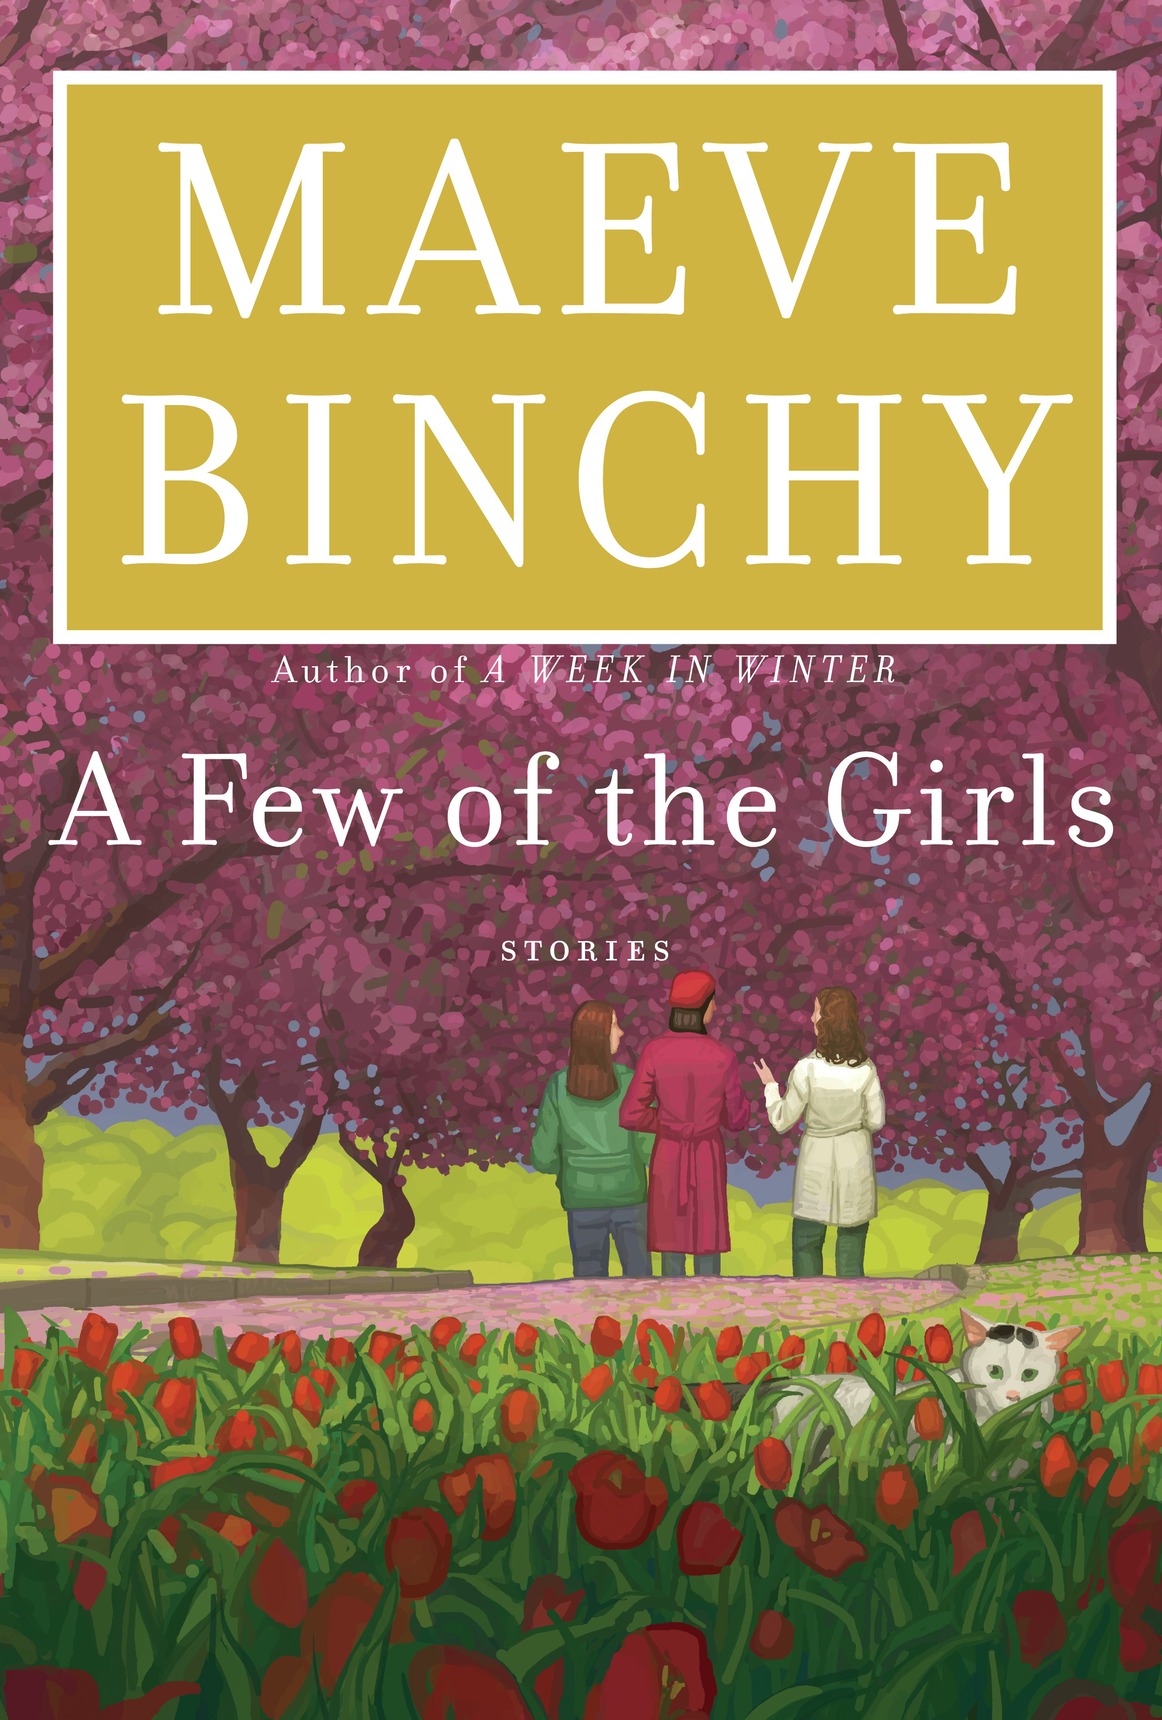 A Few of the Girls (2016) by Maeve Binchy